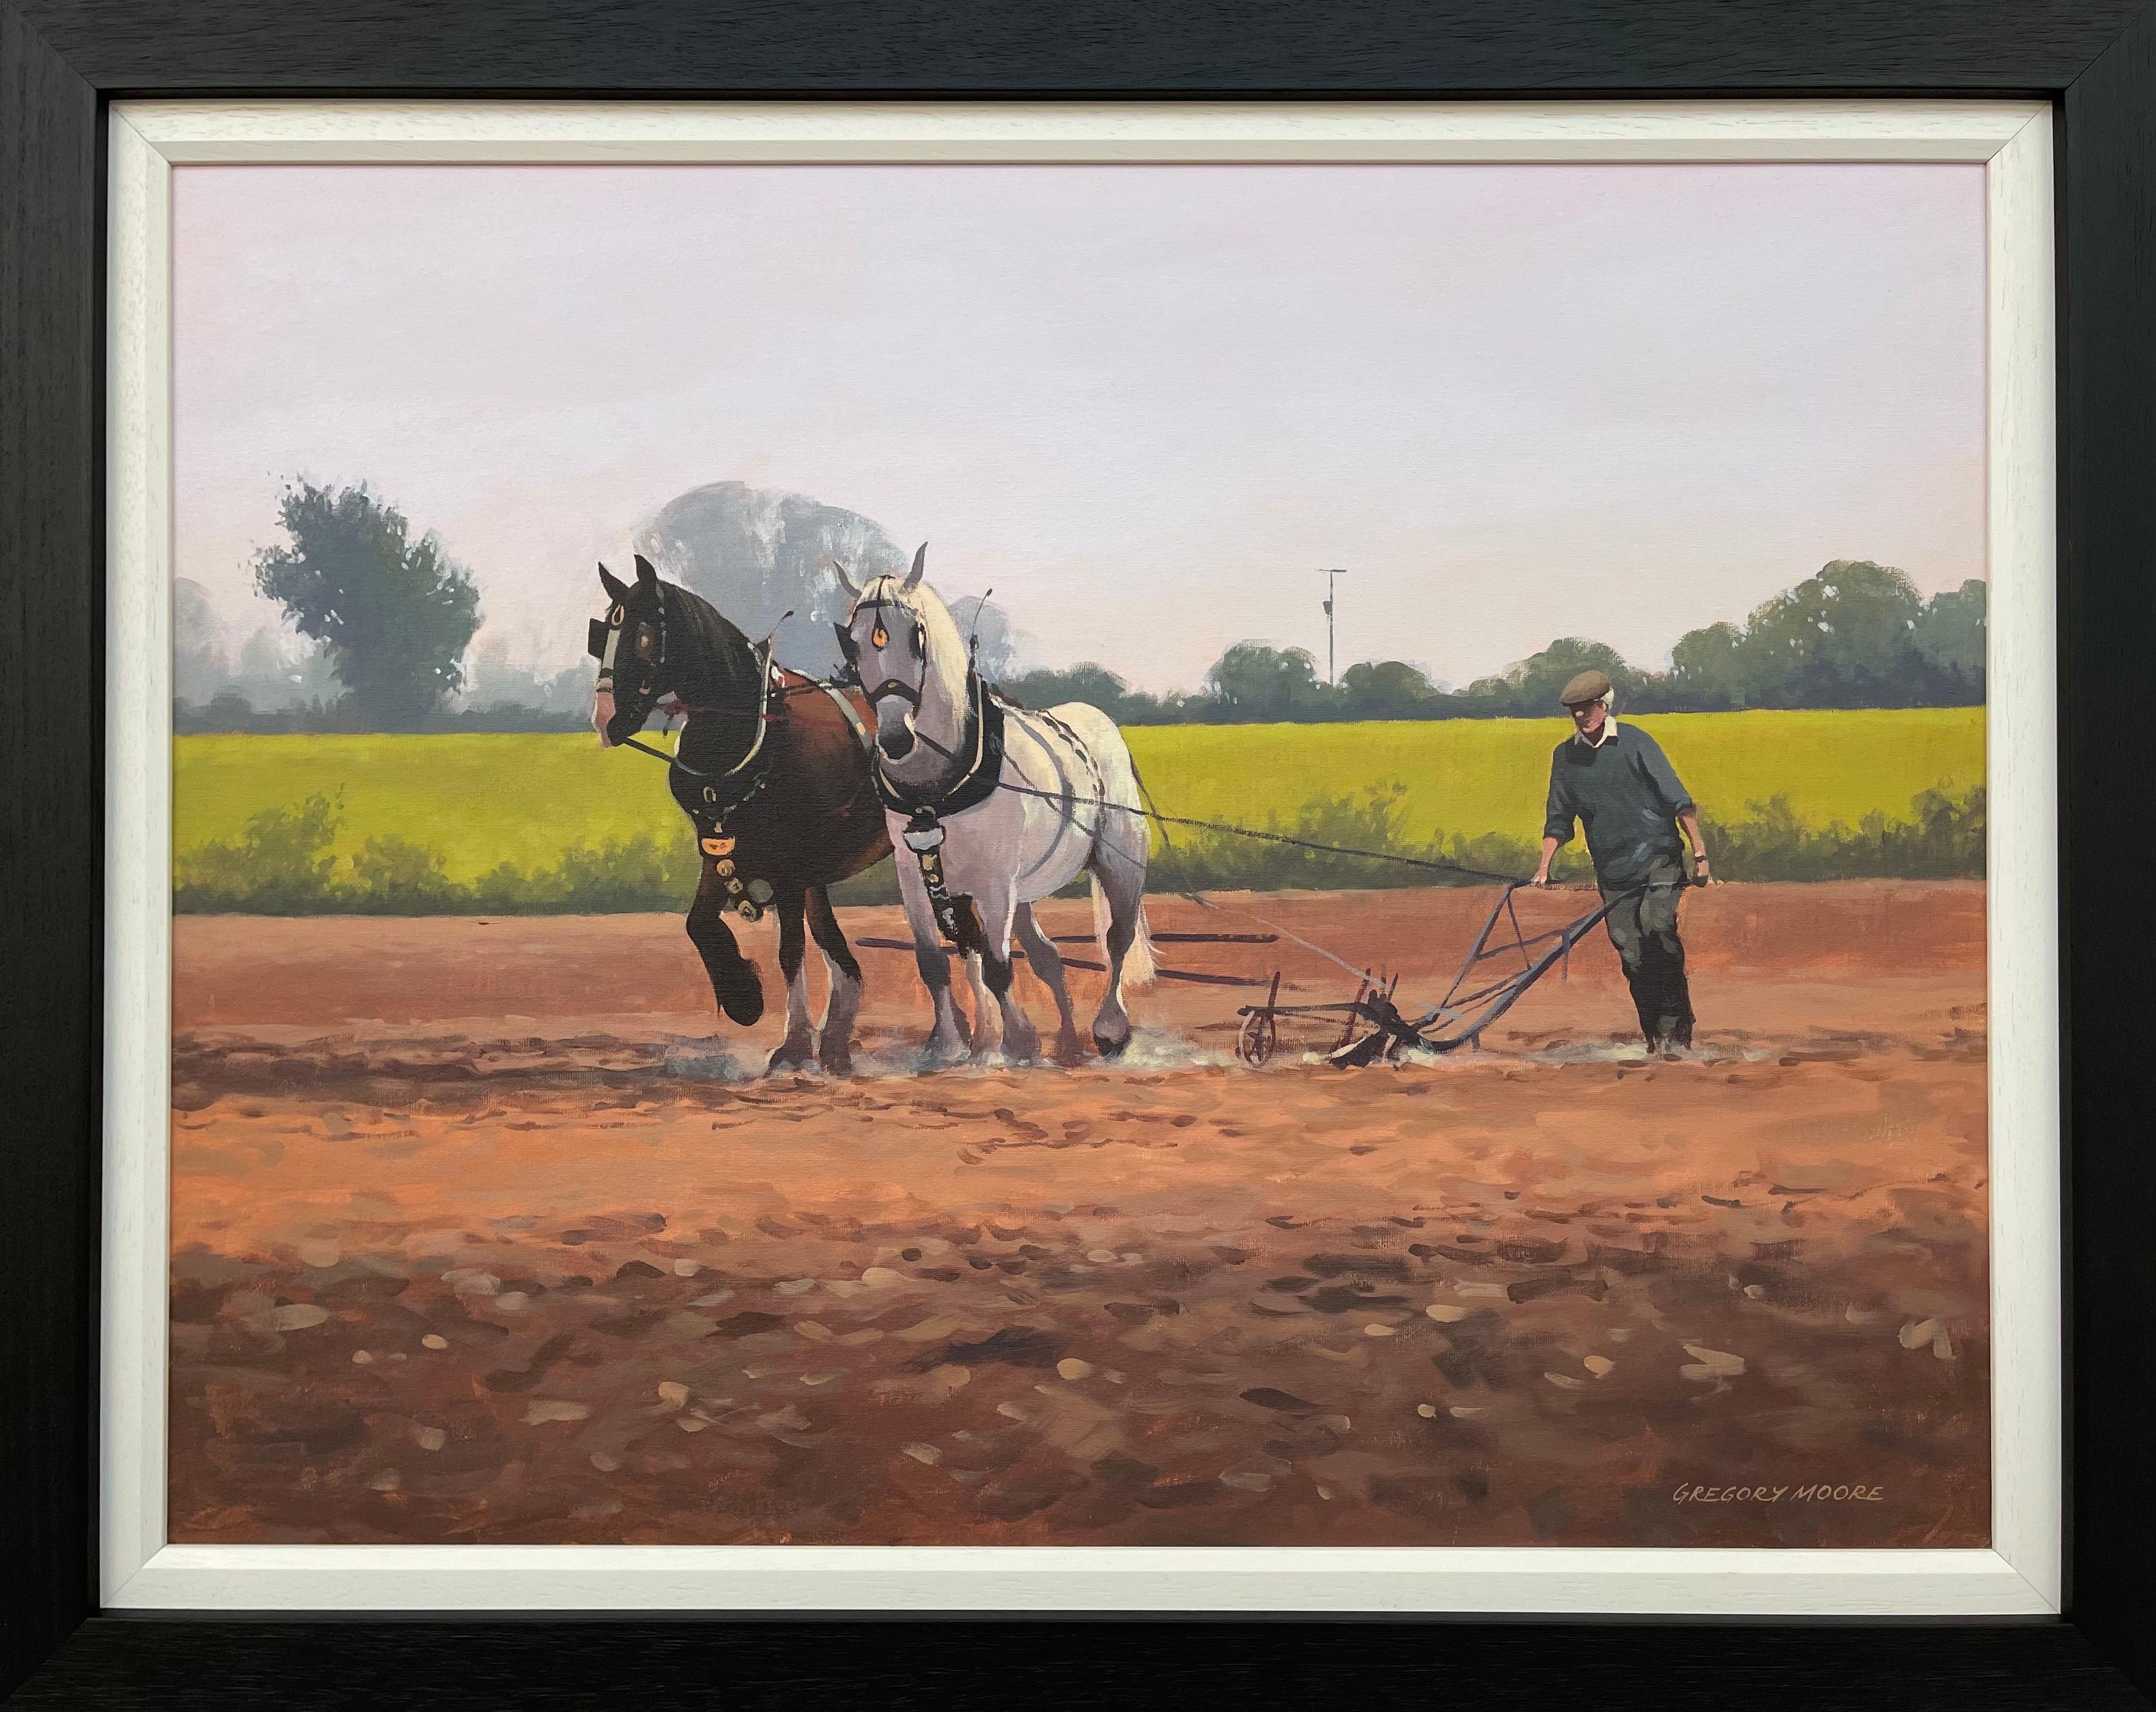 Gregory Moore Landscape Painting – Pferde mit Bauern und Pferden auf dem Lande in Irland von zeitgenössischem irischen Künstler